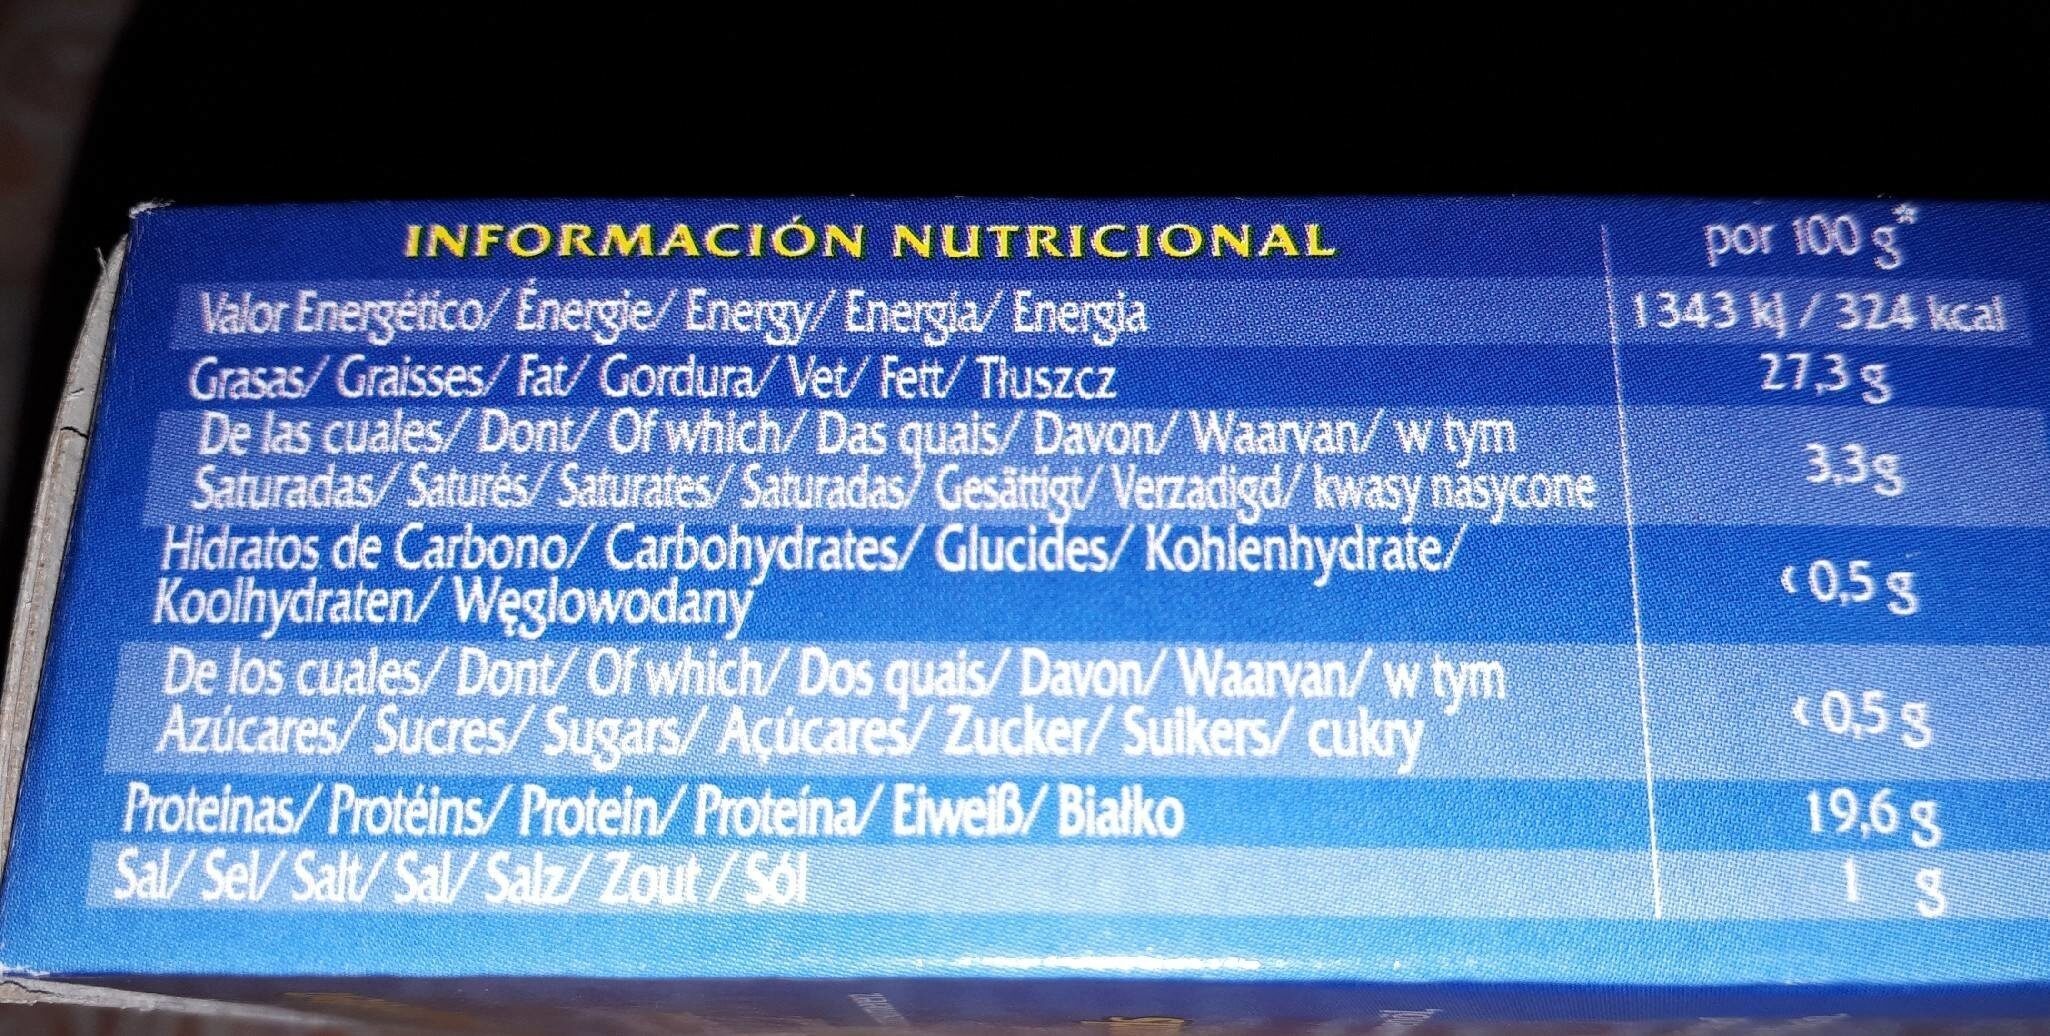 Tacos De Cefalópodos al ajillo - Nutrition facts - fr